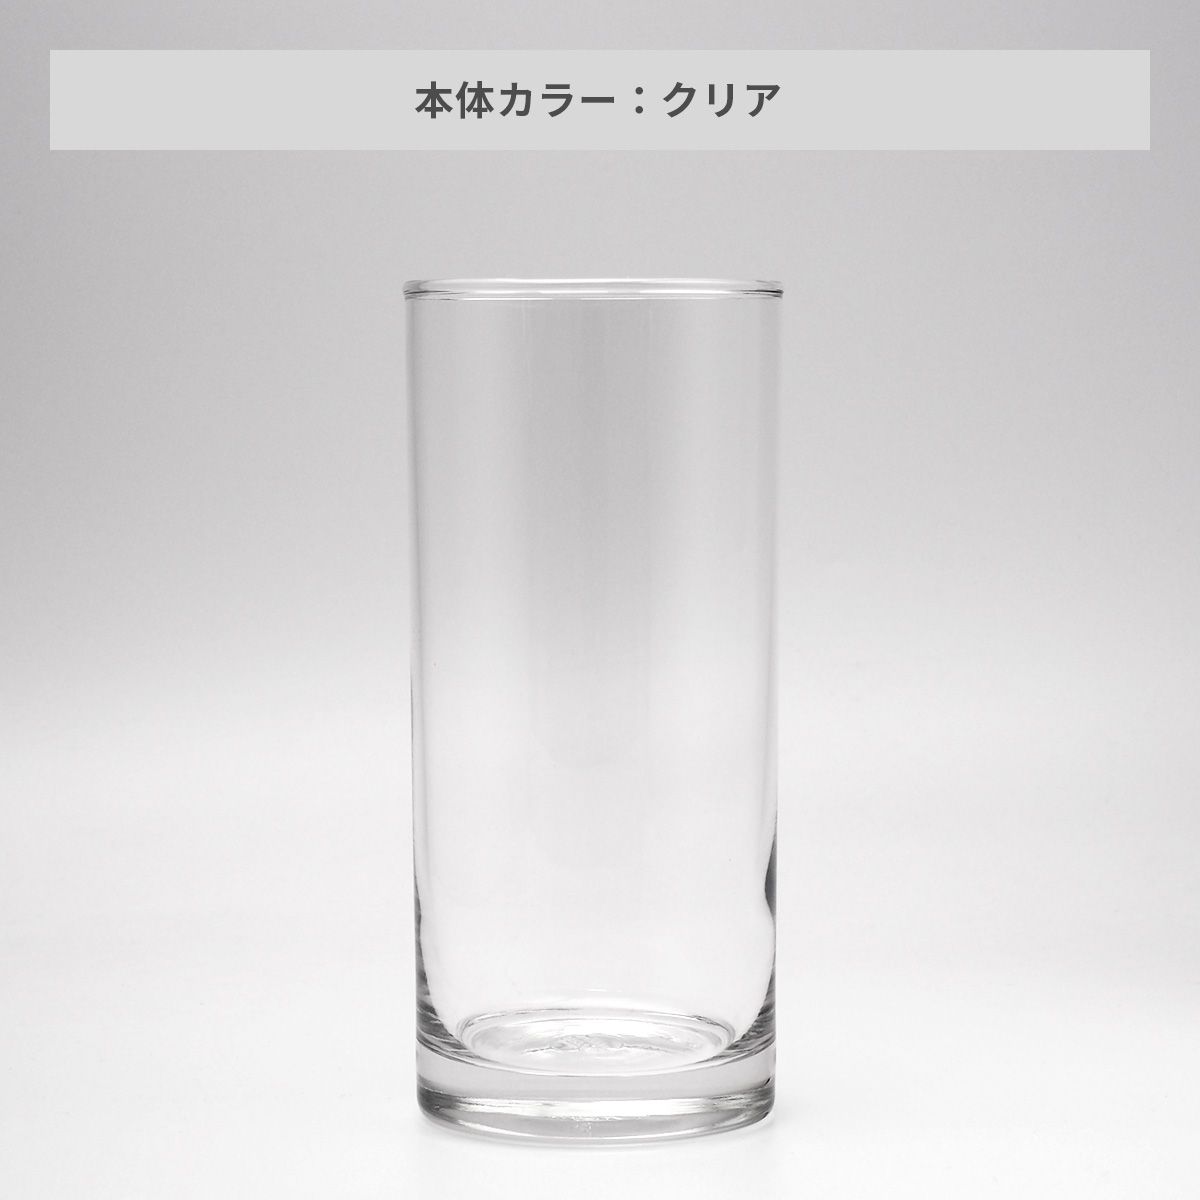 オーシャンロンググラス 380ml【オリジナルグラス / 回転シルク印刷】 画像4